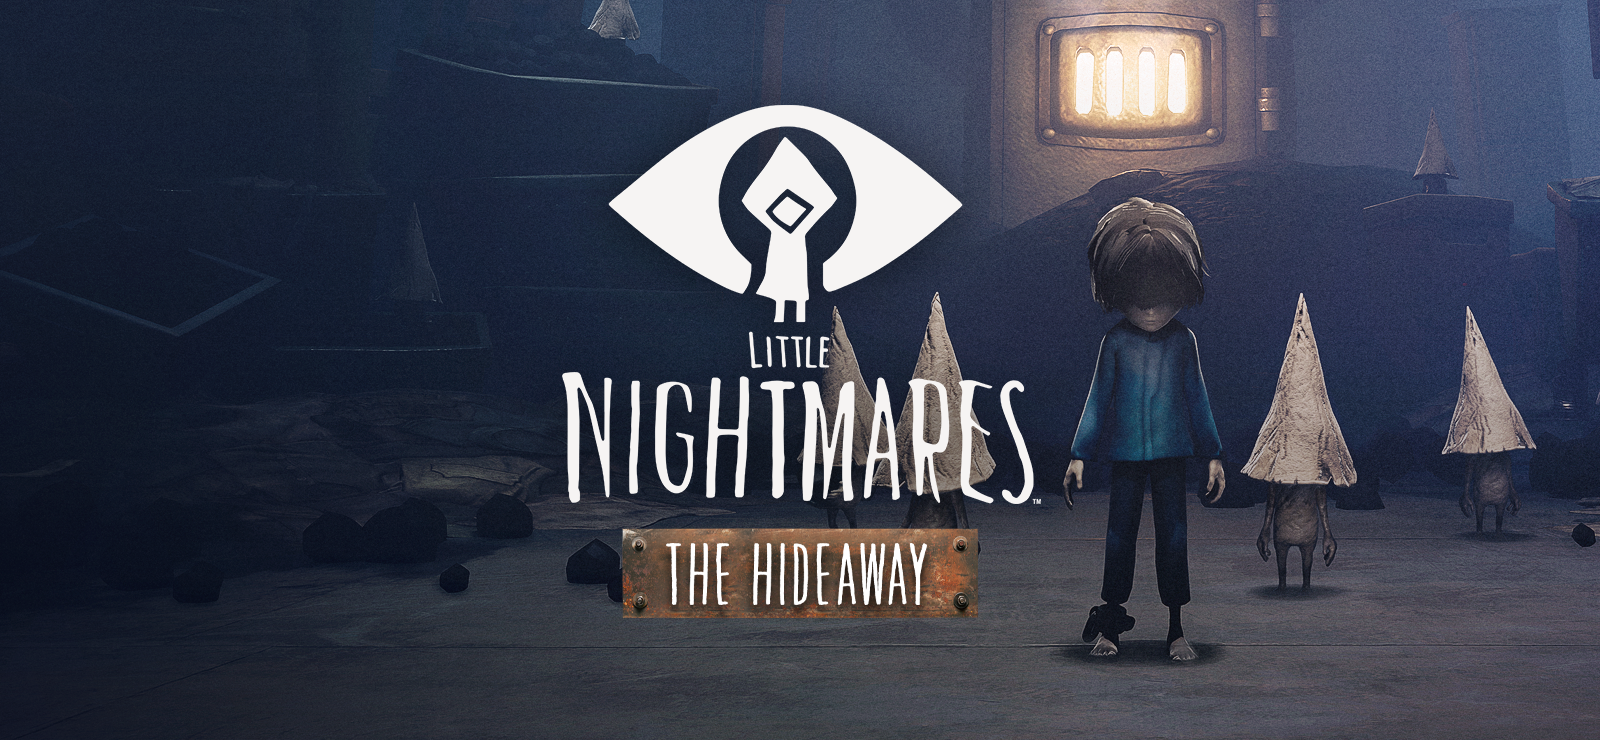 Little Nightmares - The Hideaway DLC